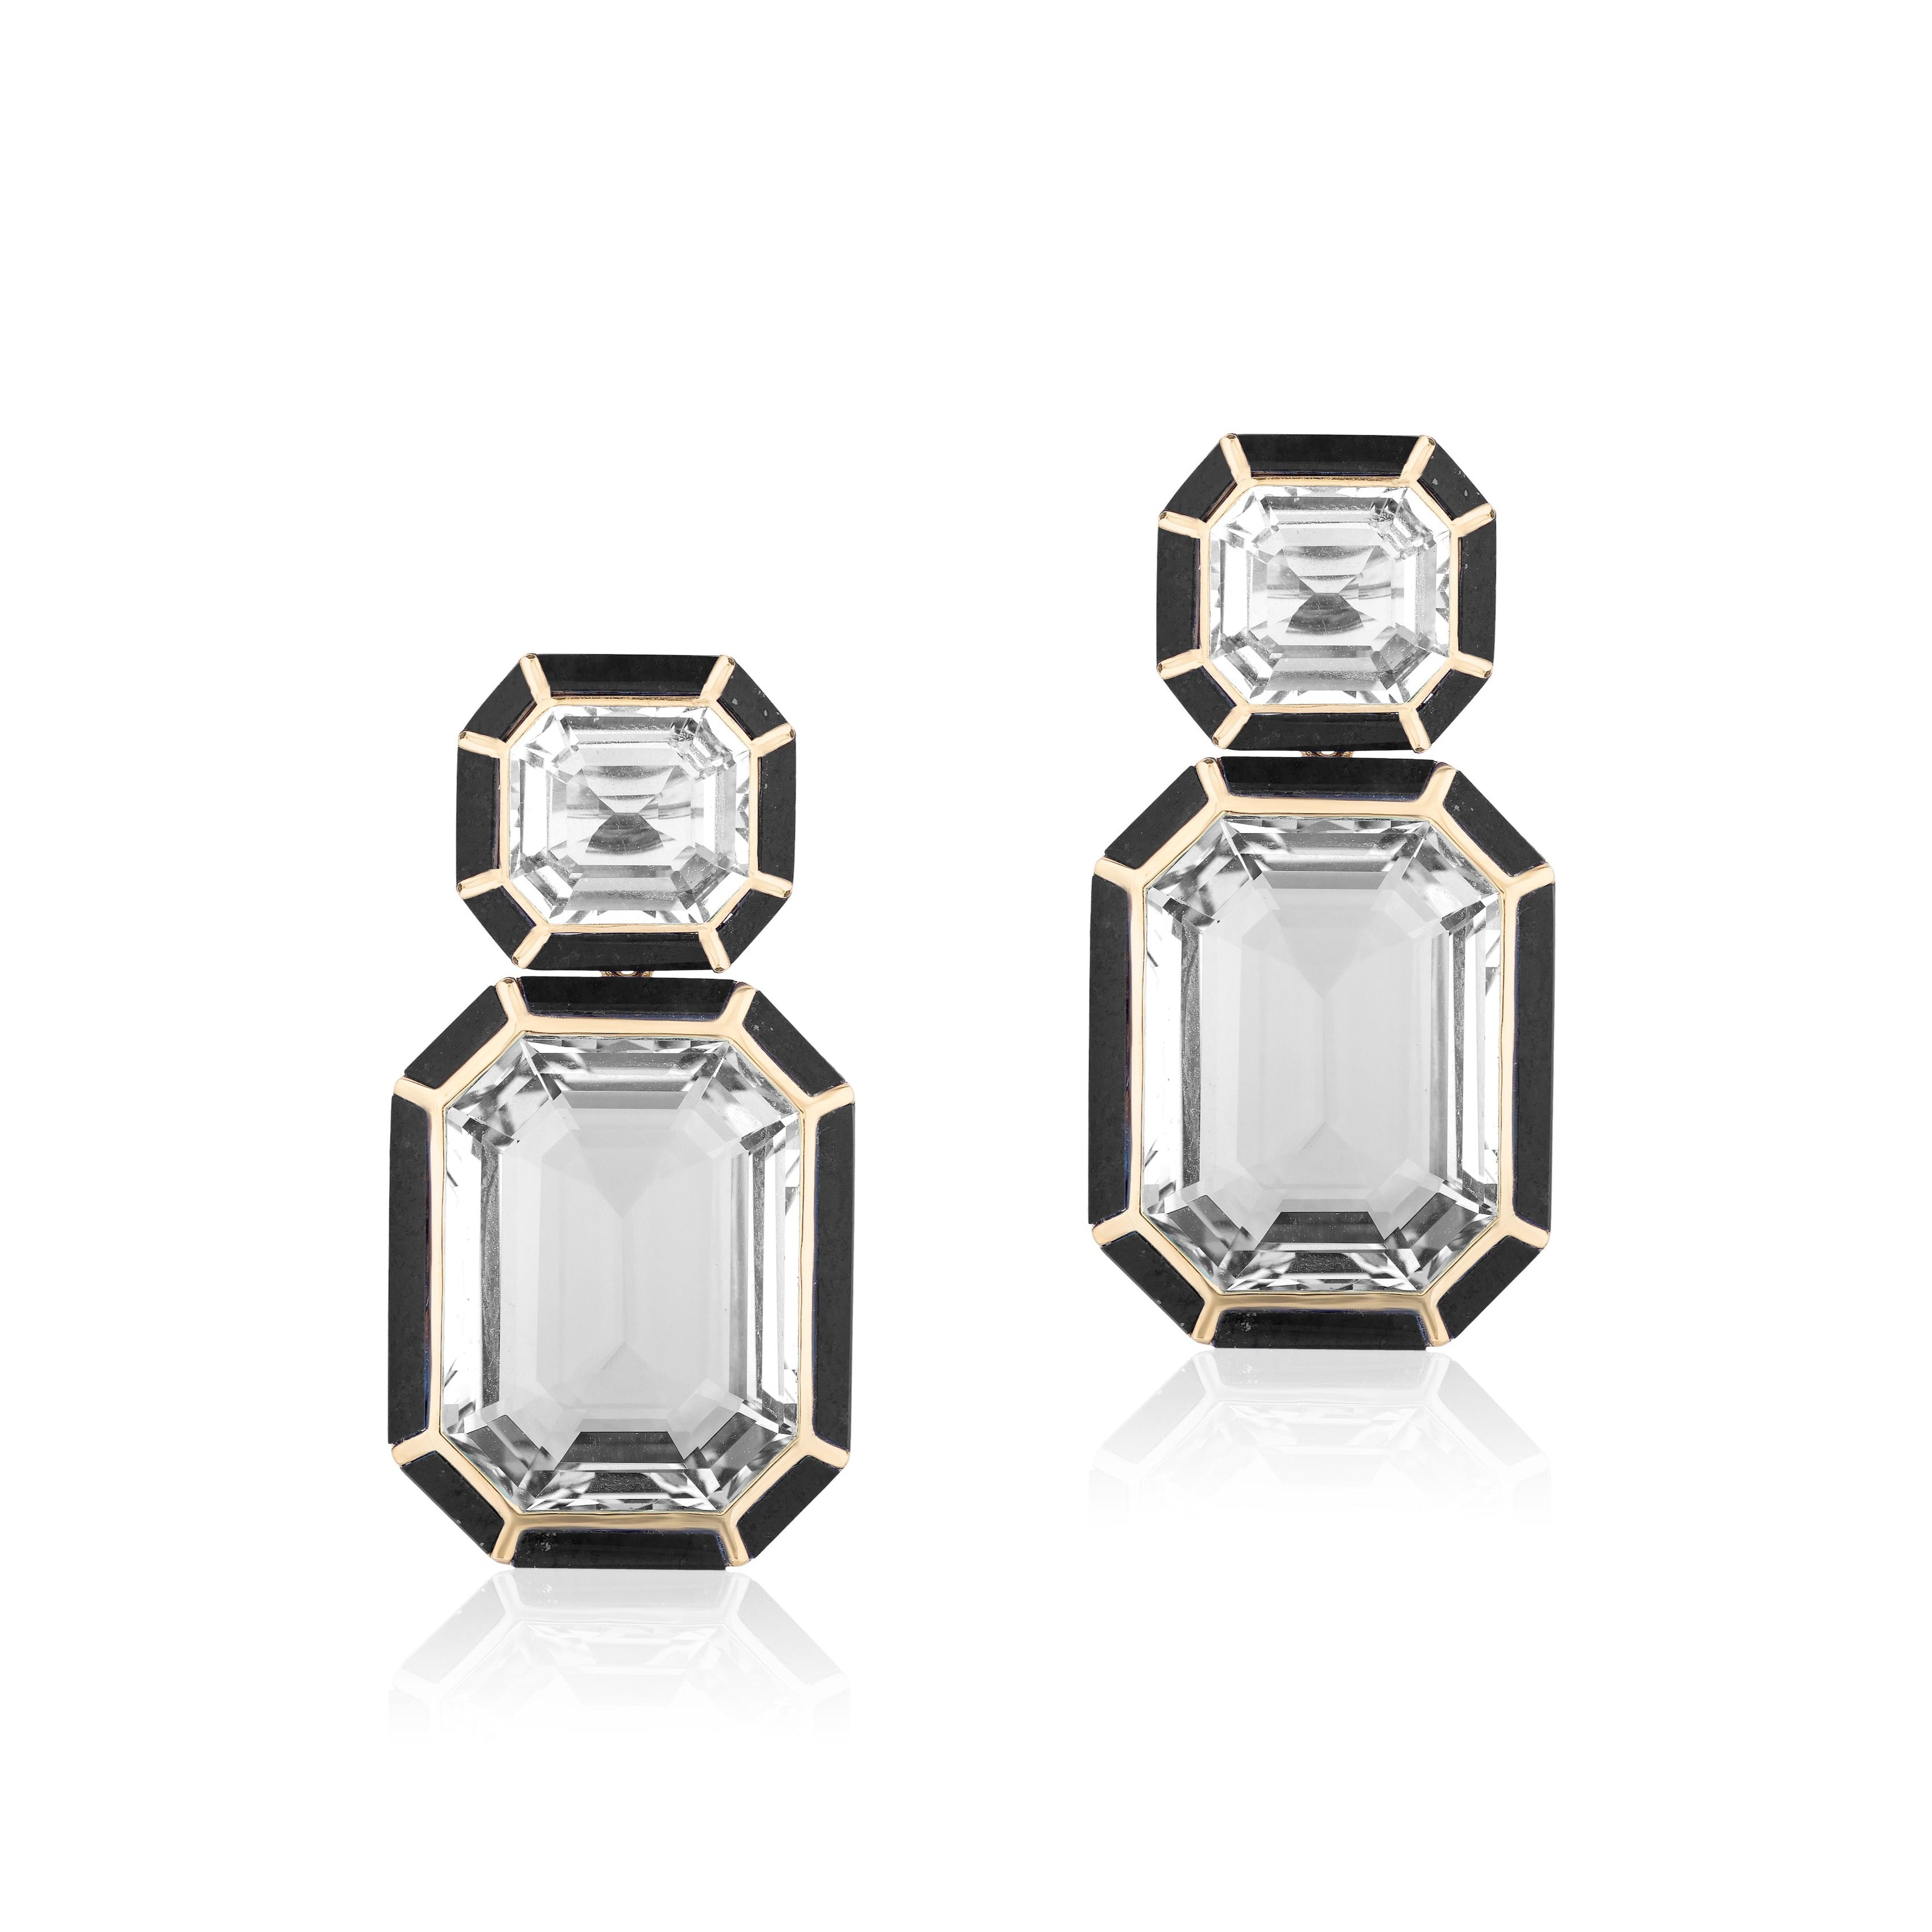 Rock Crystal and Onyx Earrings Statement Earrings Goshwara   